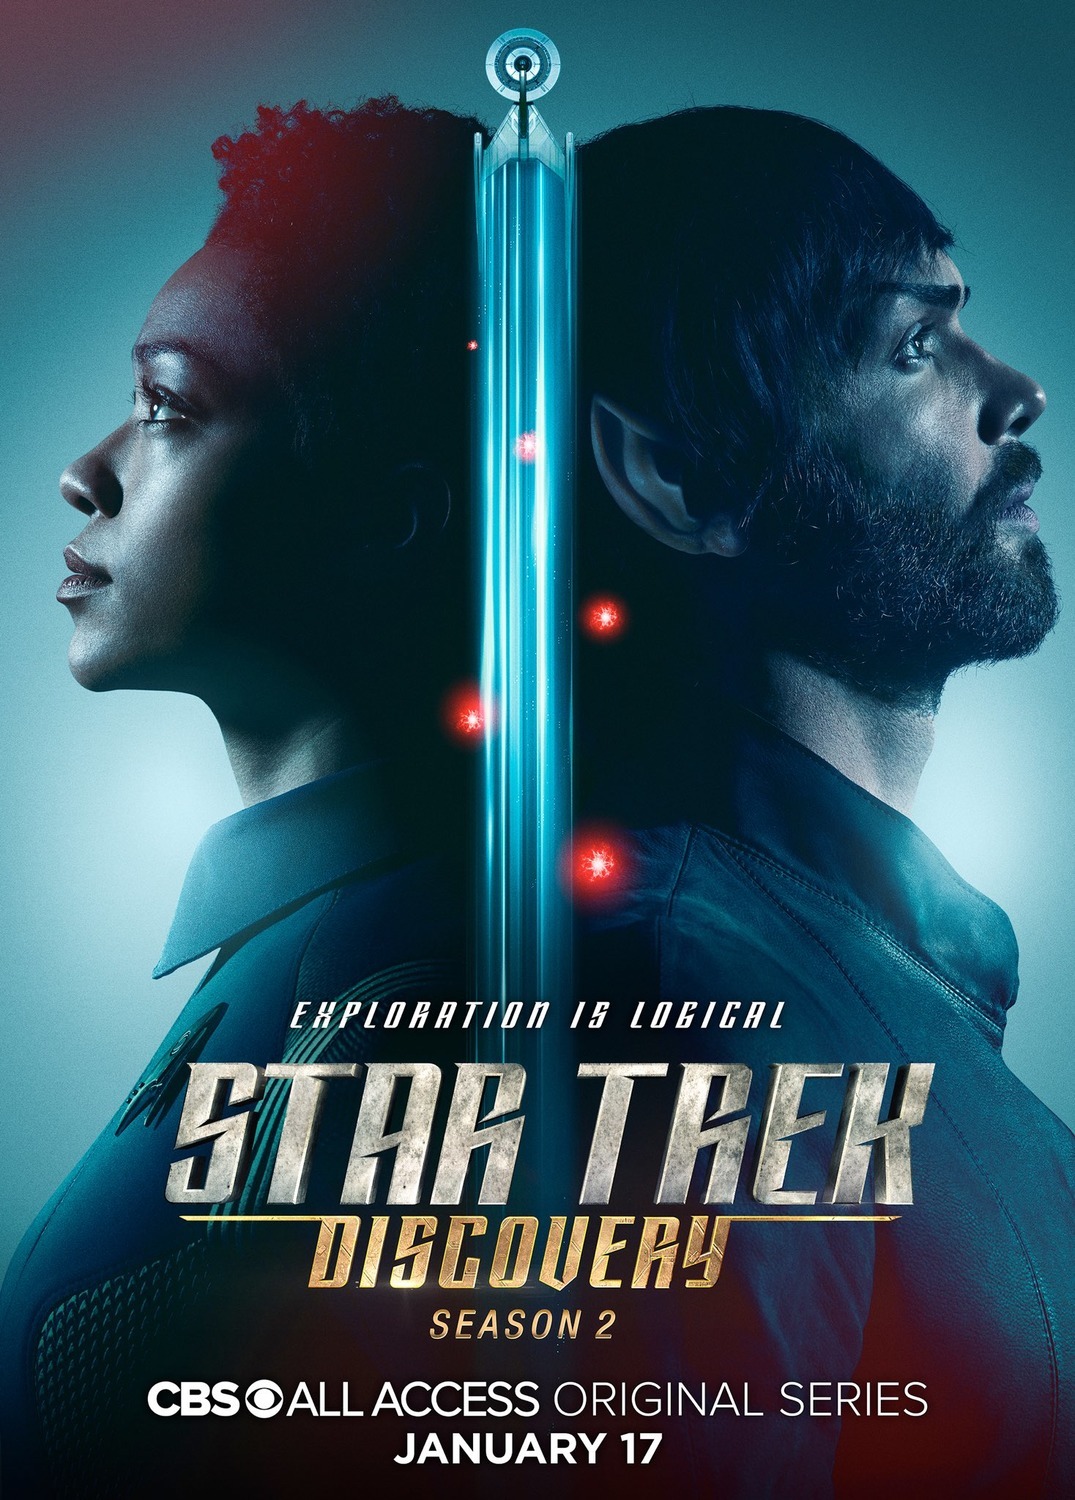 ดูหนังออนไลน์ Star Trek Discovery Season 2 EP.14 สตาร์ เทรค ดิสคัฟเวอรี่ ซีซั่นที่ 2 ตอนที่ 14